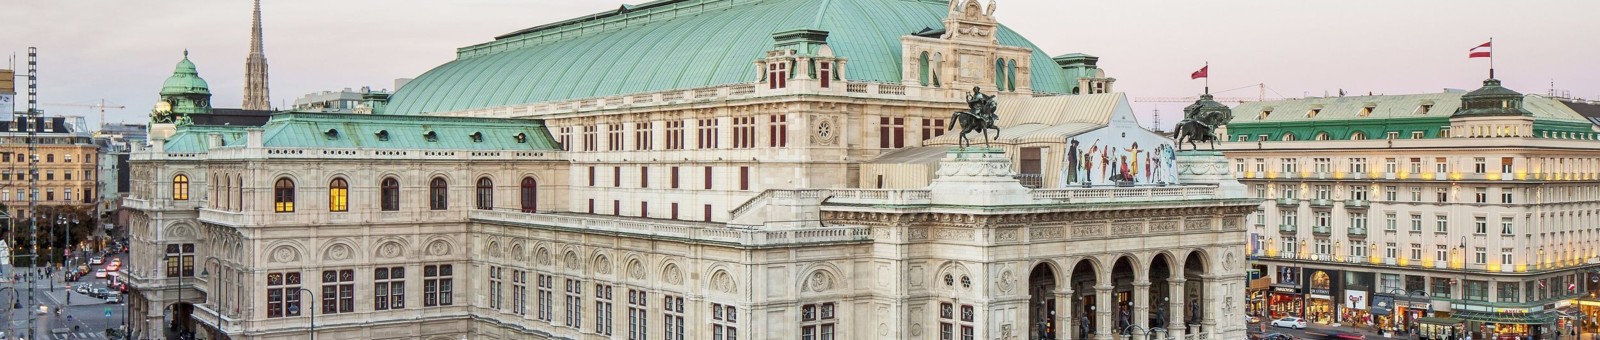     ウィーン国立歌劇場 